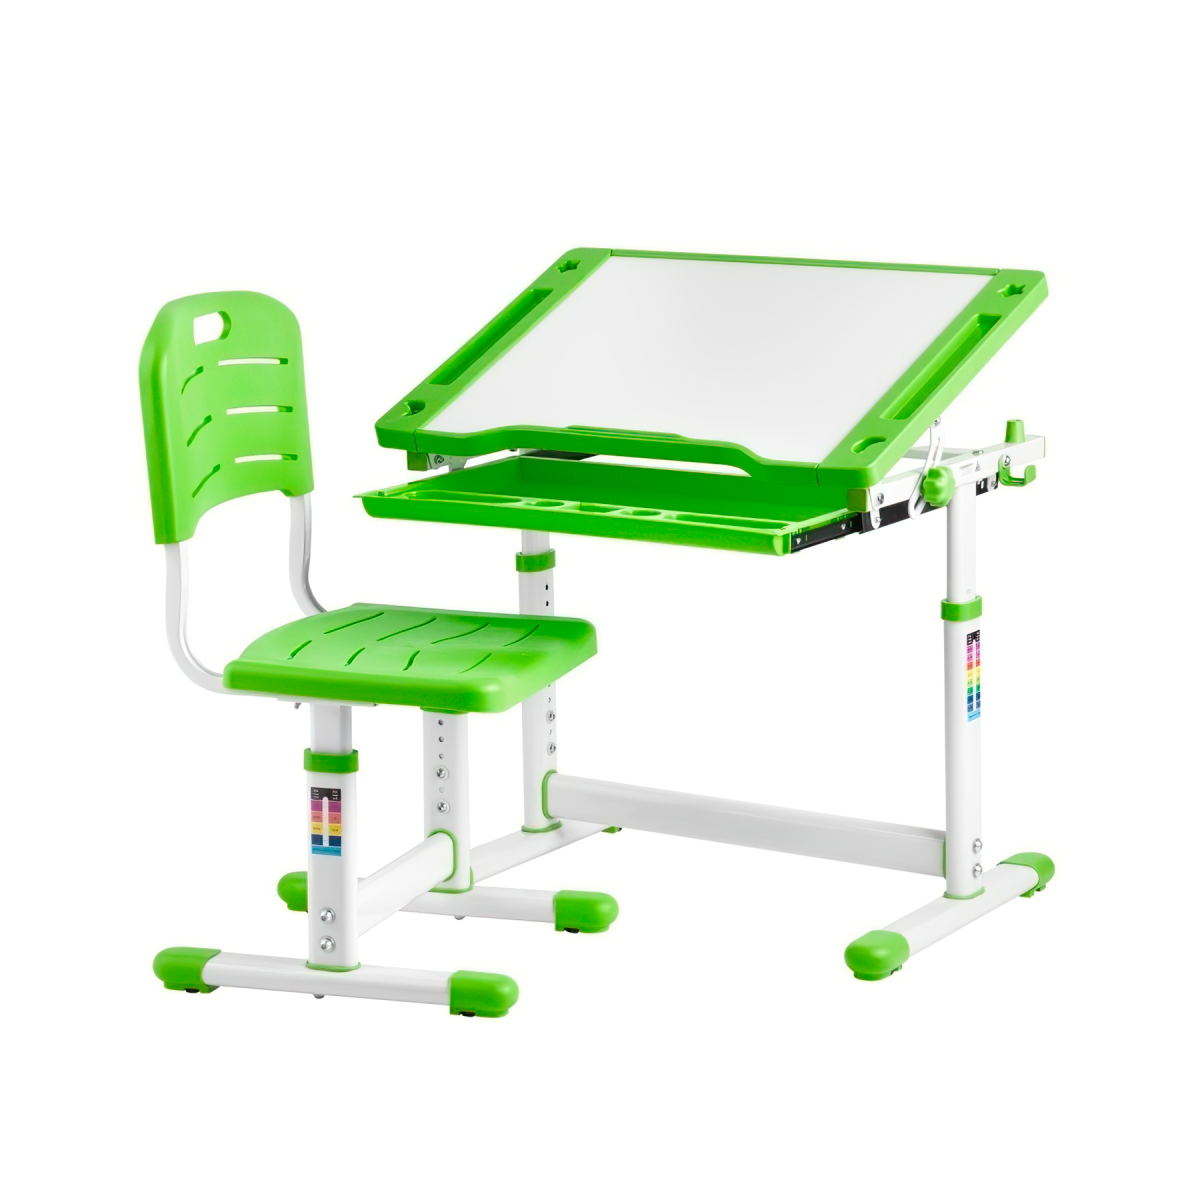 Комплект KinderZen Arlekino парта + стул + выдвижной ящик, зелёный kett up ящик органайзер выдвижной maxi